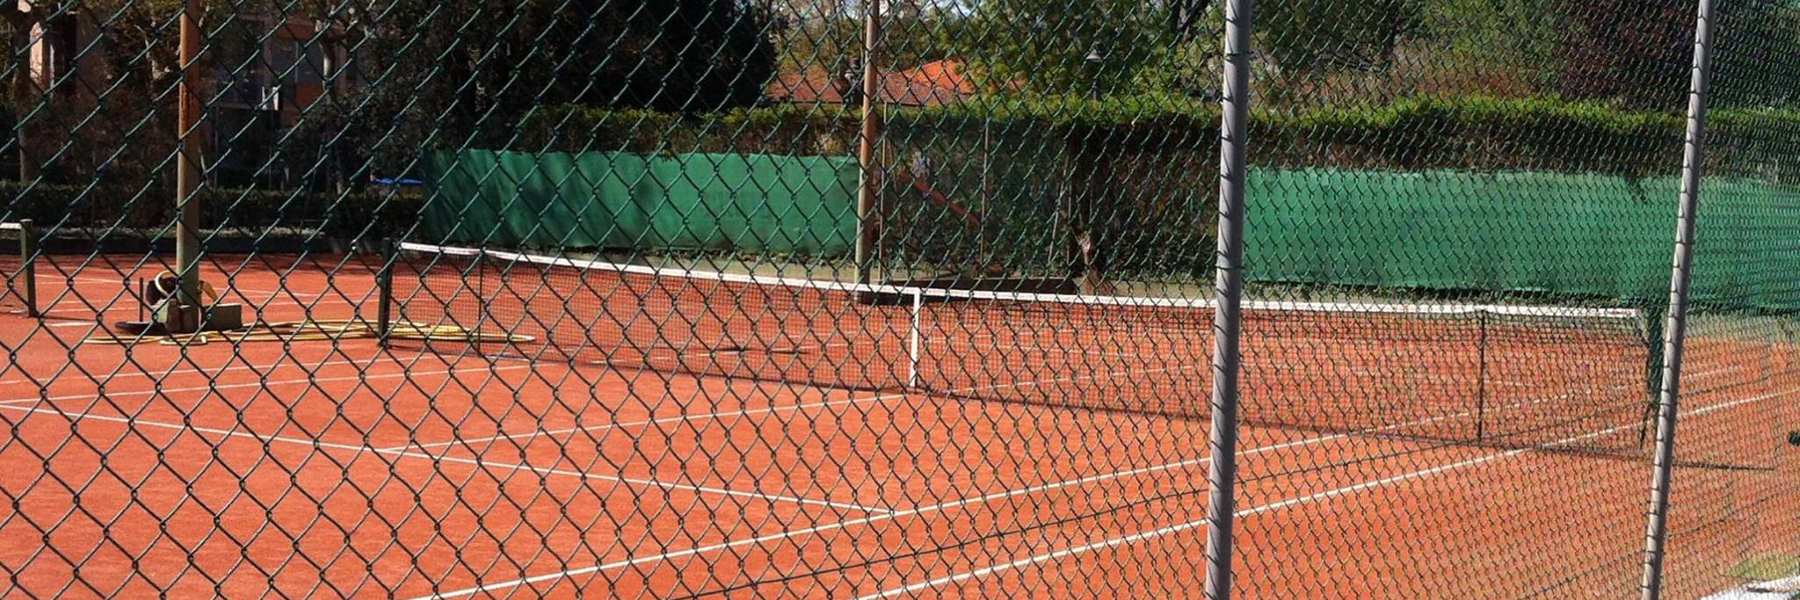 Centro Tennis Guidazzi Parco D'Annunzio 